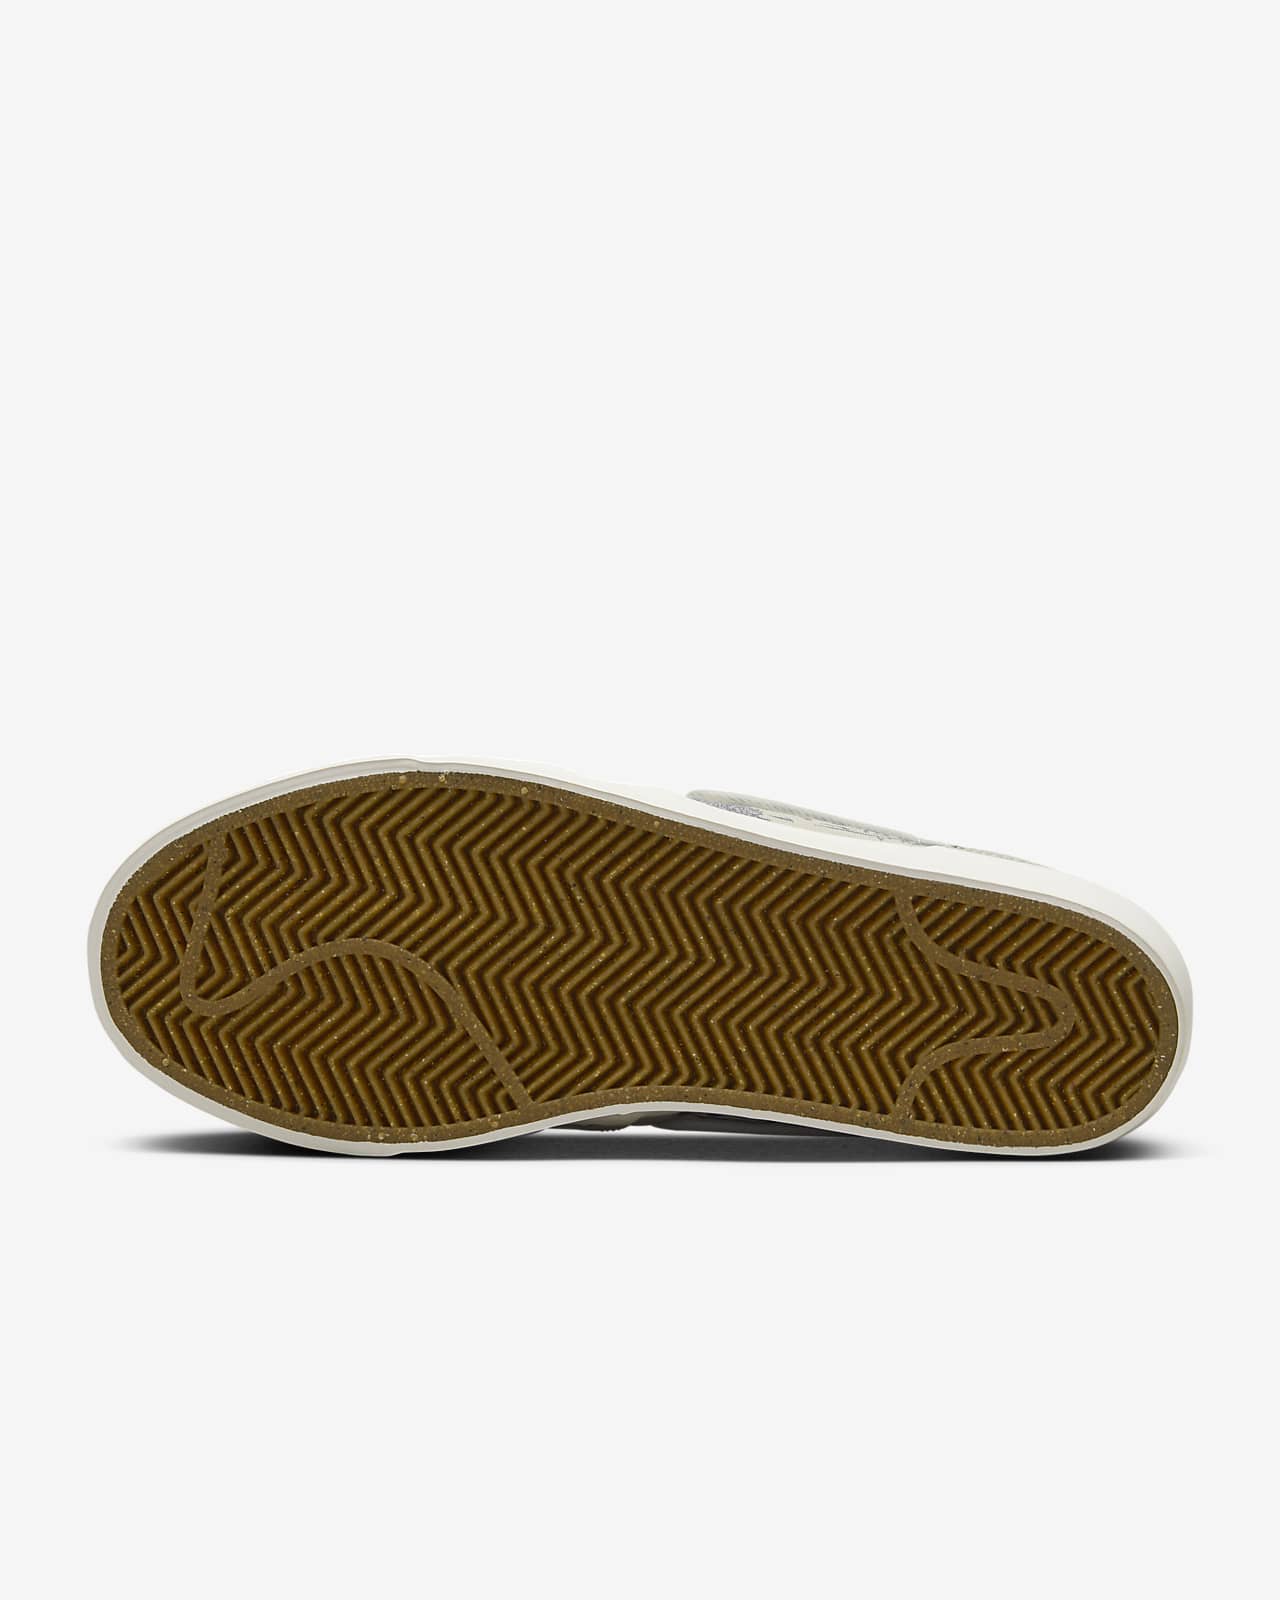 Nike SB Zoom Pogo Plus Premium Skate Shoes